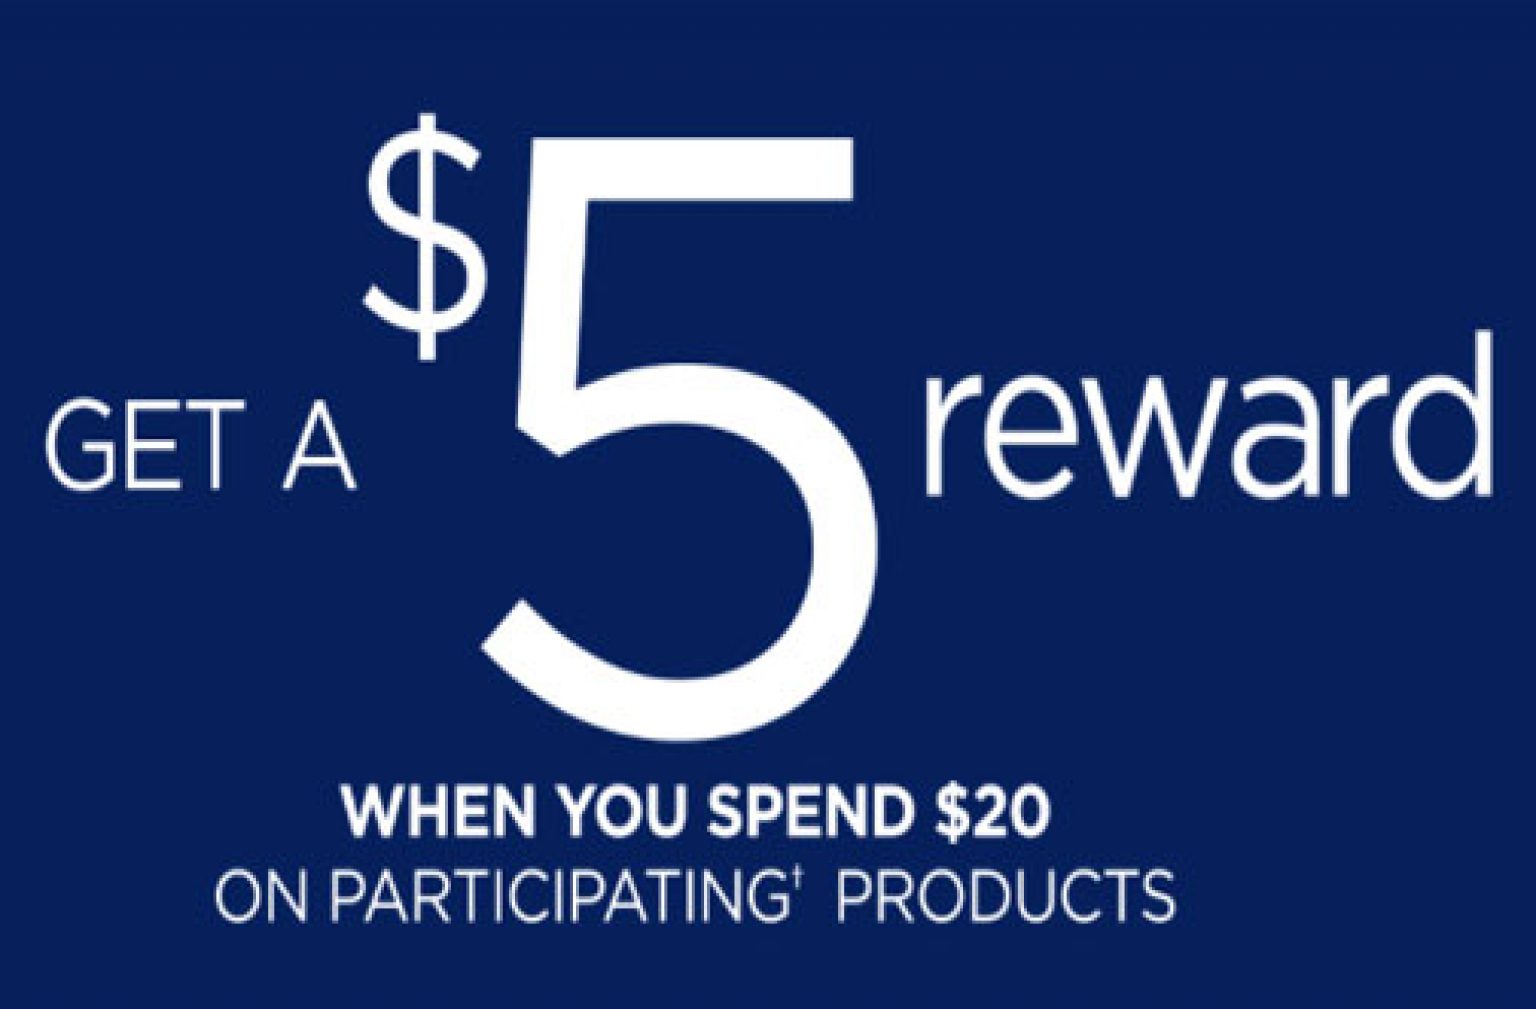 unilever-rebate-get-a-5-reward-deals-from-savealoonie